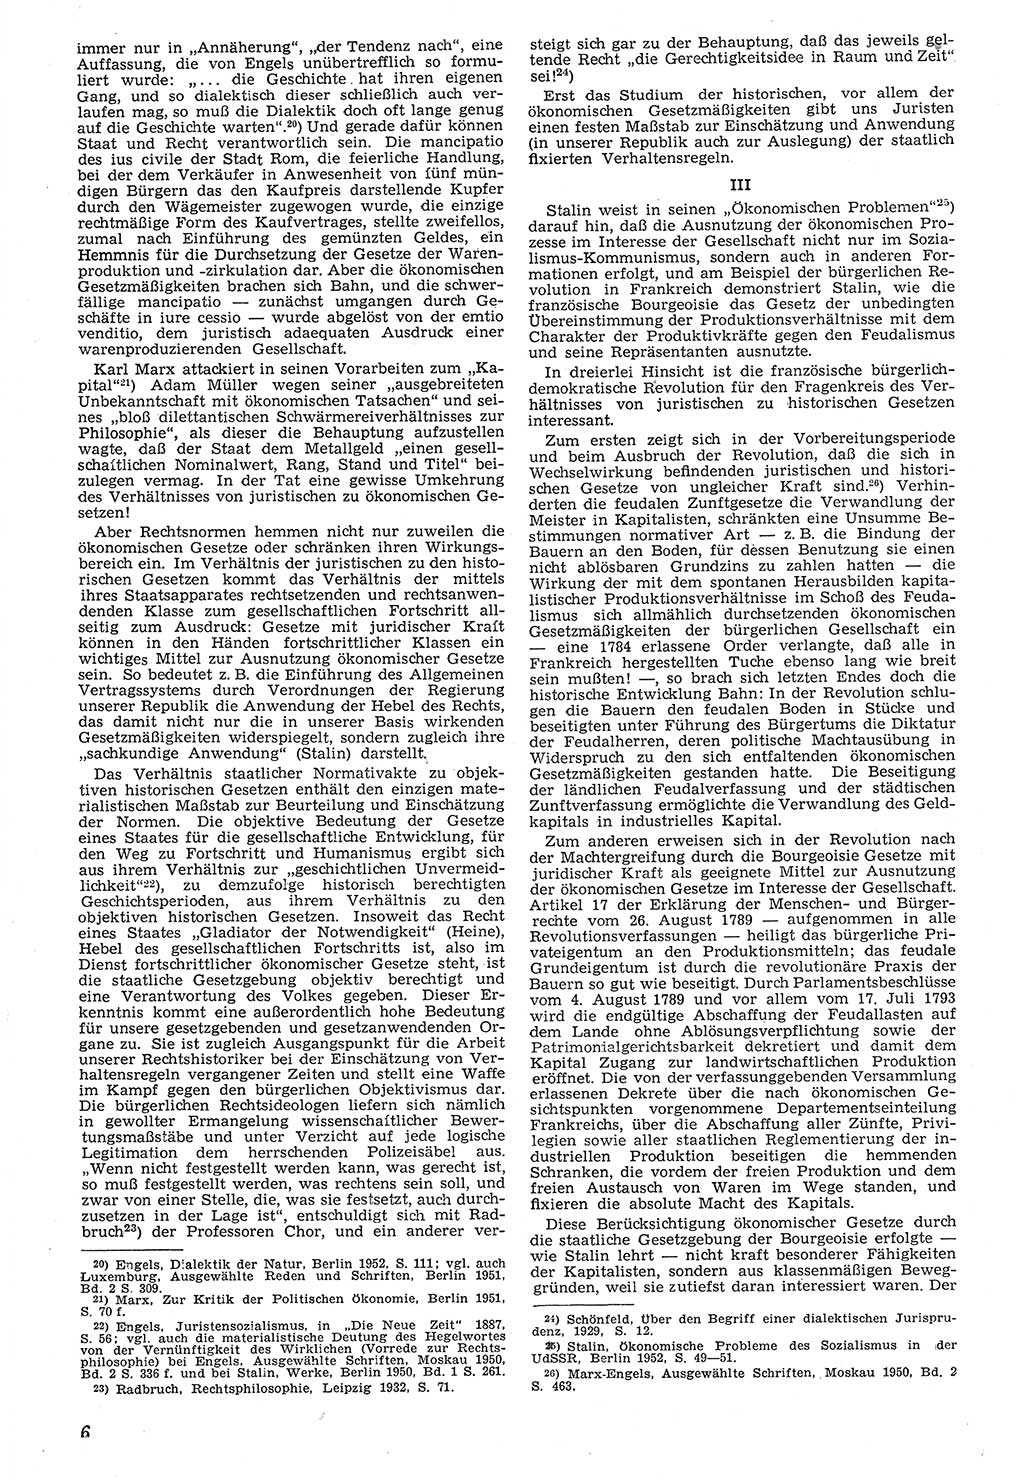 Neue Justiz (NJ), Zeitschrift für Recht und Rechtswissenschaft [Deutsche Demokratische Republik (DDR)], 7. Jahrgang 1953, Seite 6 (NJ DDR 1953, S. 6)